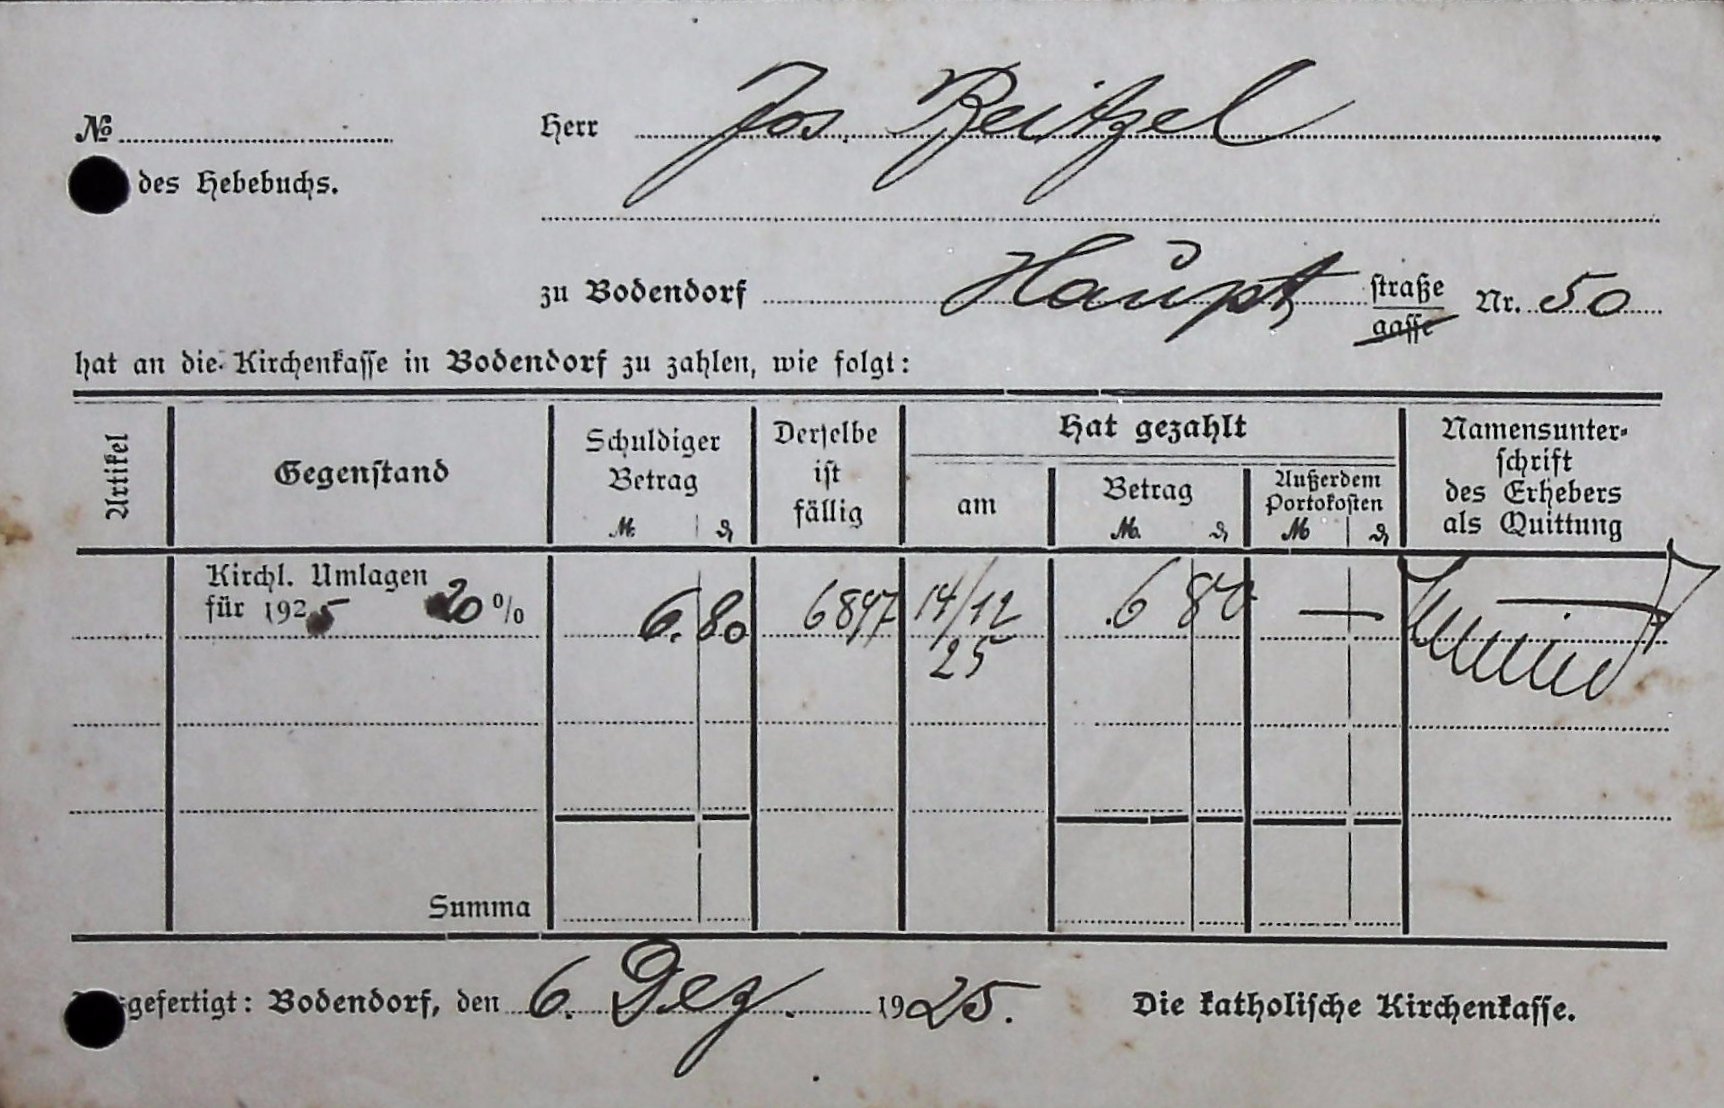 Quittung über die Zahlung der kirchlichen Umlage für 1925 an die Kirche (Heimatarchiv Bad Bodendorf CC BY-NC-SA)